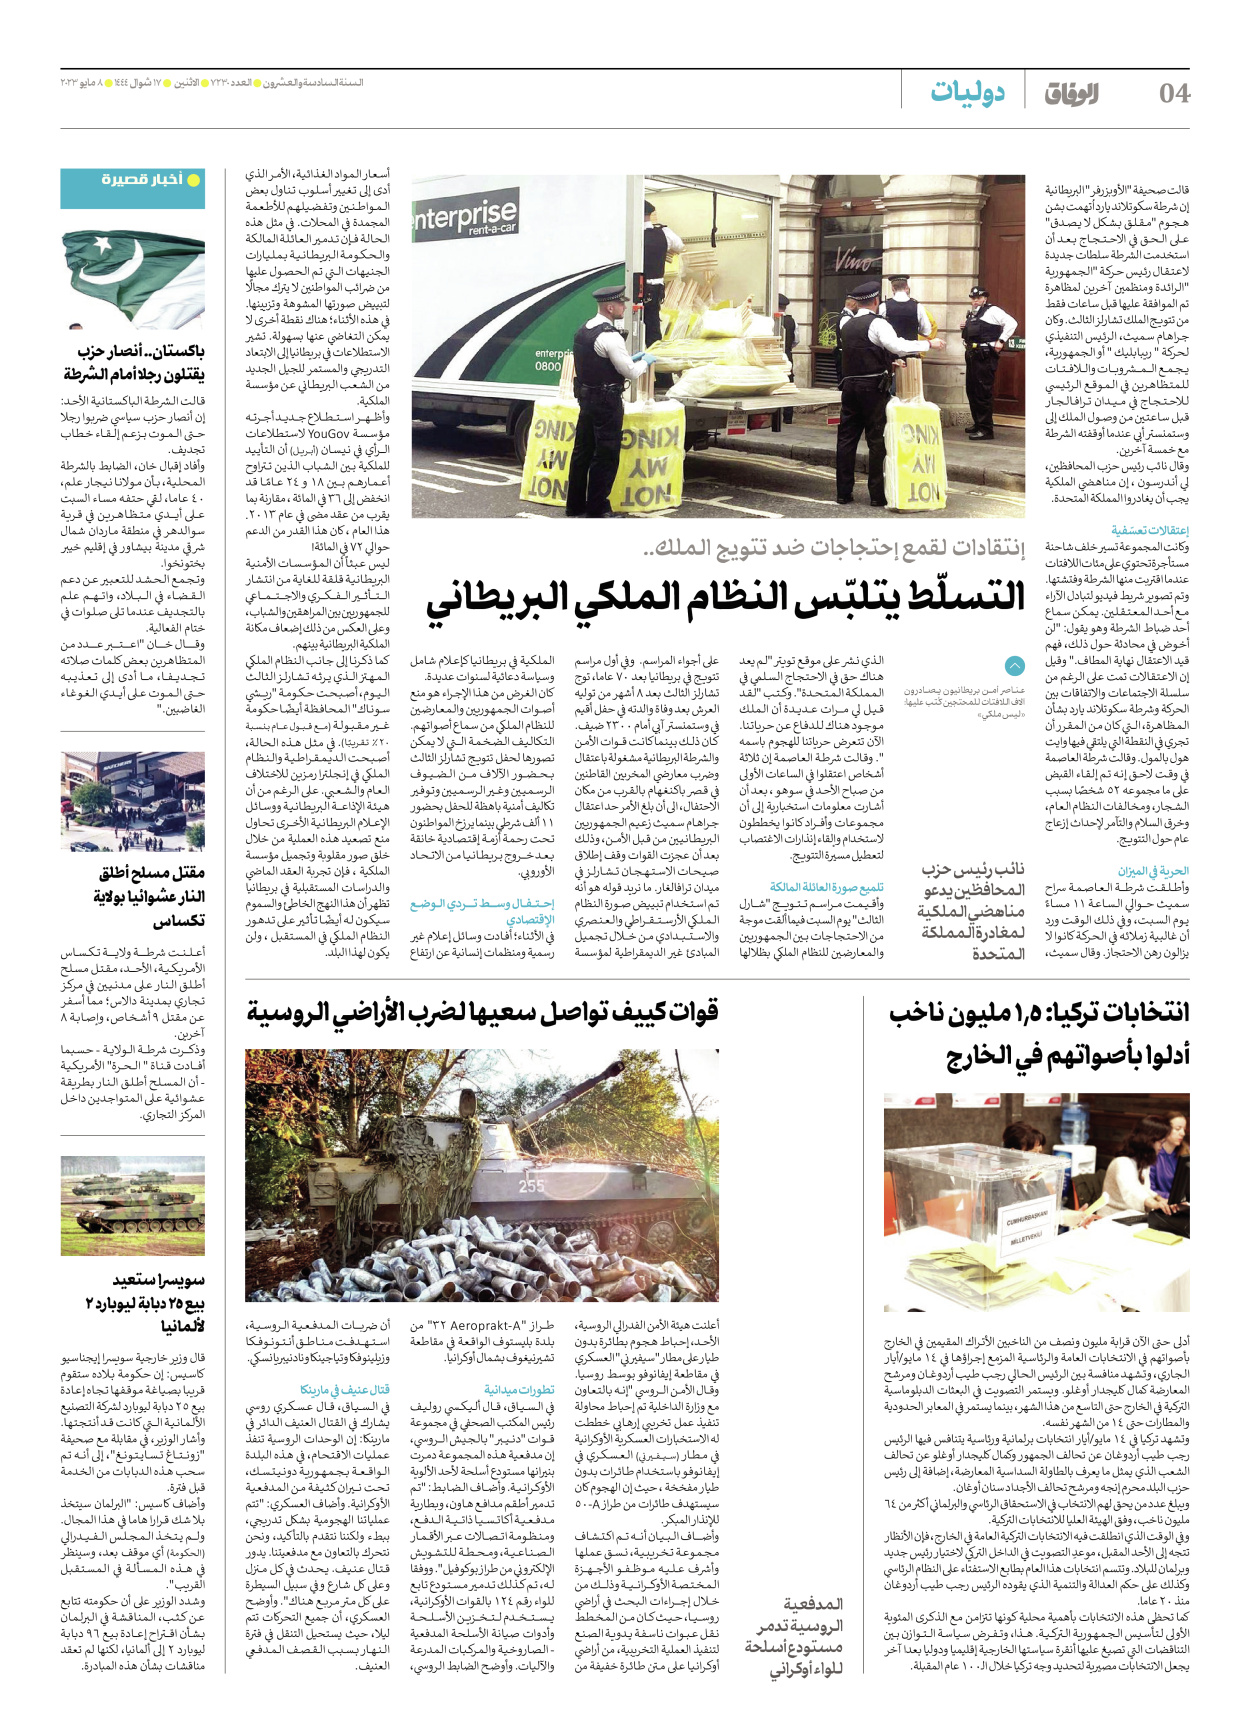 صحیفة ایران الدولیة الوفاق - العدد سبعة آلاف ومائتان وثلاثون - ٠٨ مايو ٢٠٢٣ - الصفحة ٤